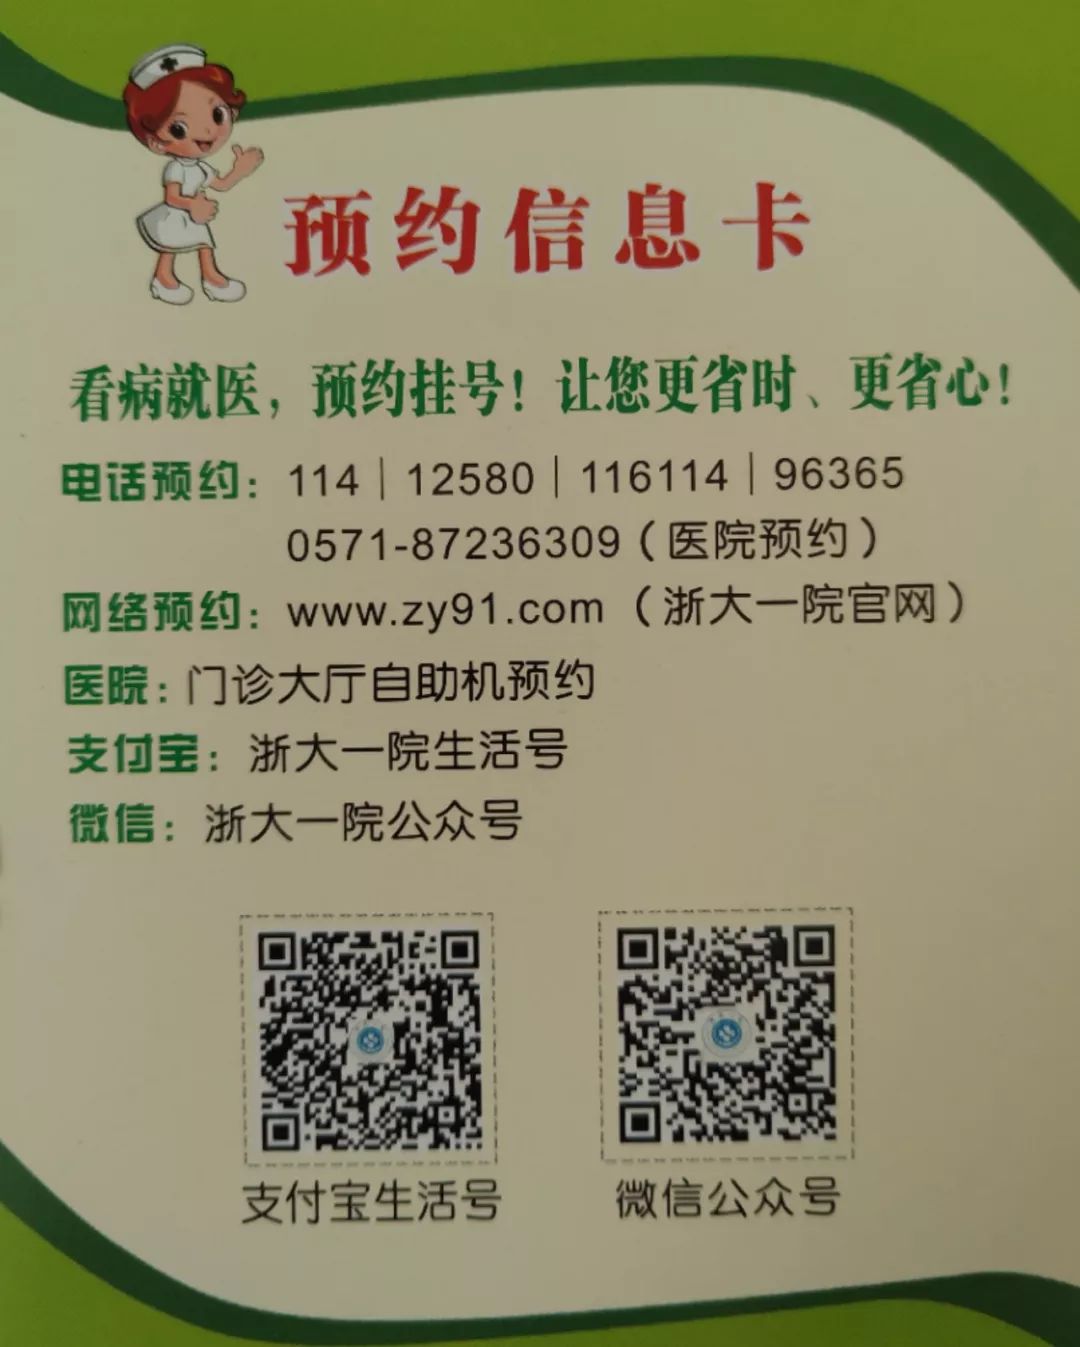 关于北京老年医院黄牛专业挂号帮您解决所有疑虑的信息